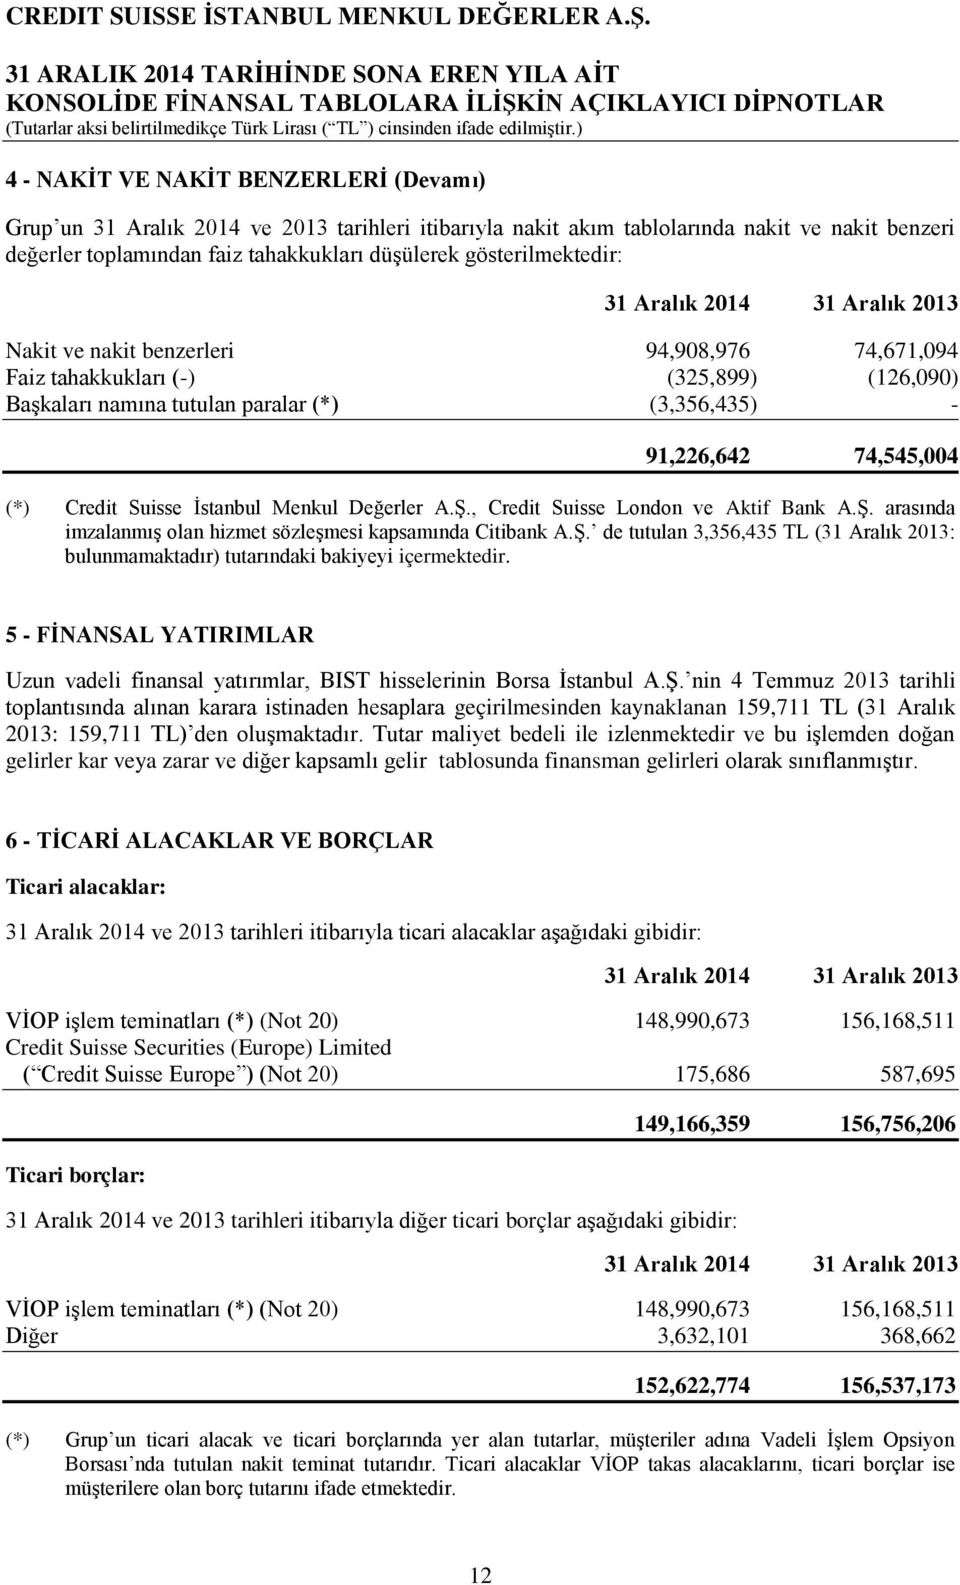 İstanbul Menkul Değerler A.Ş., Credit Suisse London ve Aktif Bank A.Ş. arasında imzalanmış olan hizmet sözleşmesi kapsamında Citibank A.Ş. de tutulan 3,356,435 TL (31 Aralık 2013: bulunmamaktadır) tutarındaki bakiyeyi içermektedir.